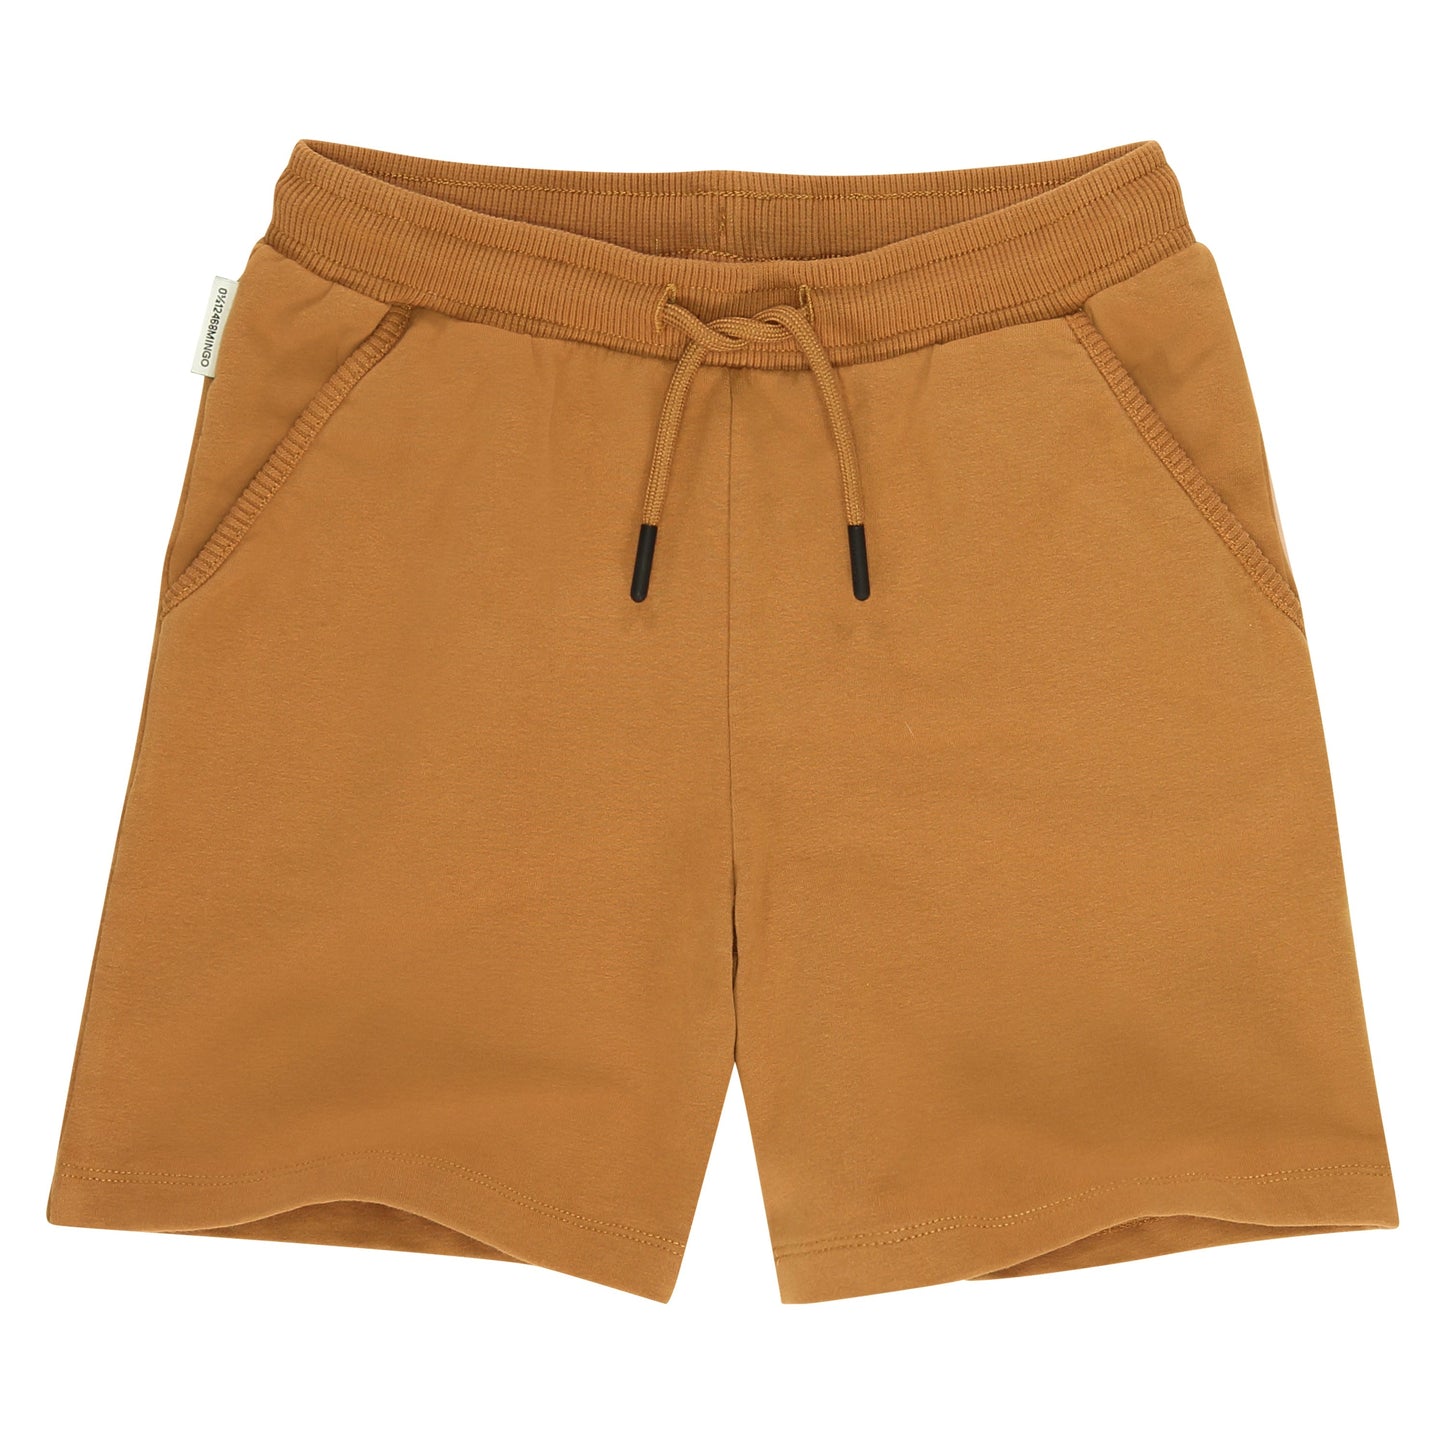 Short Kalahari Shorts Mingo 